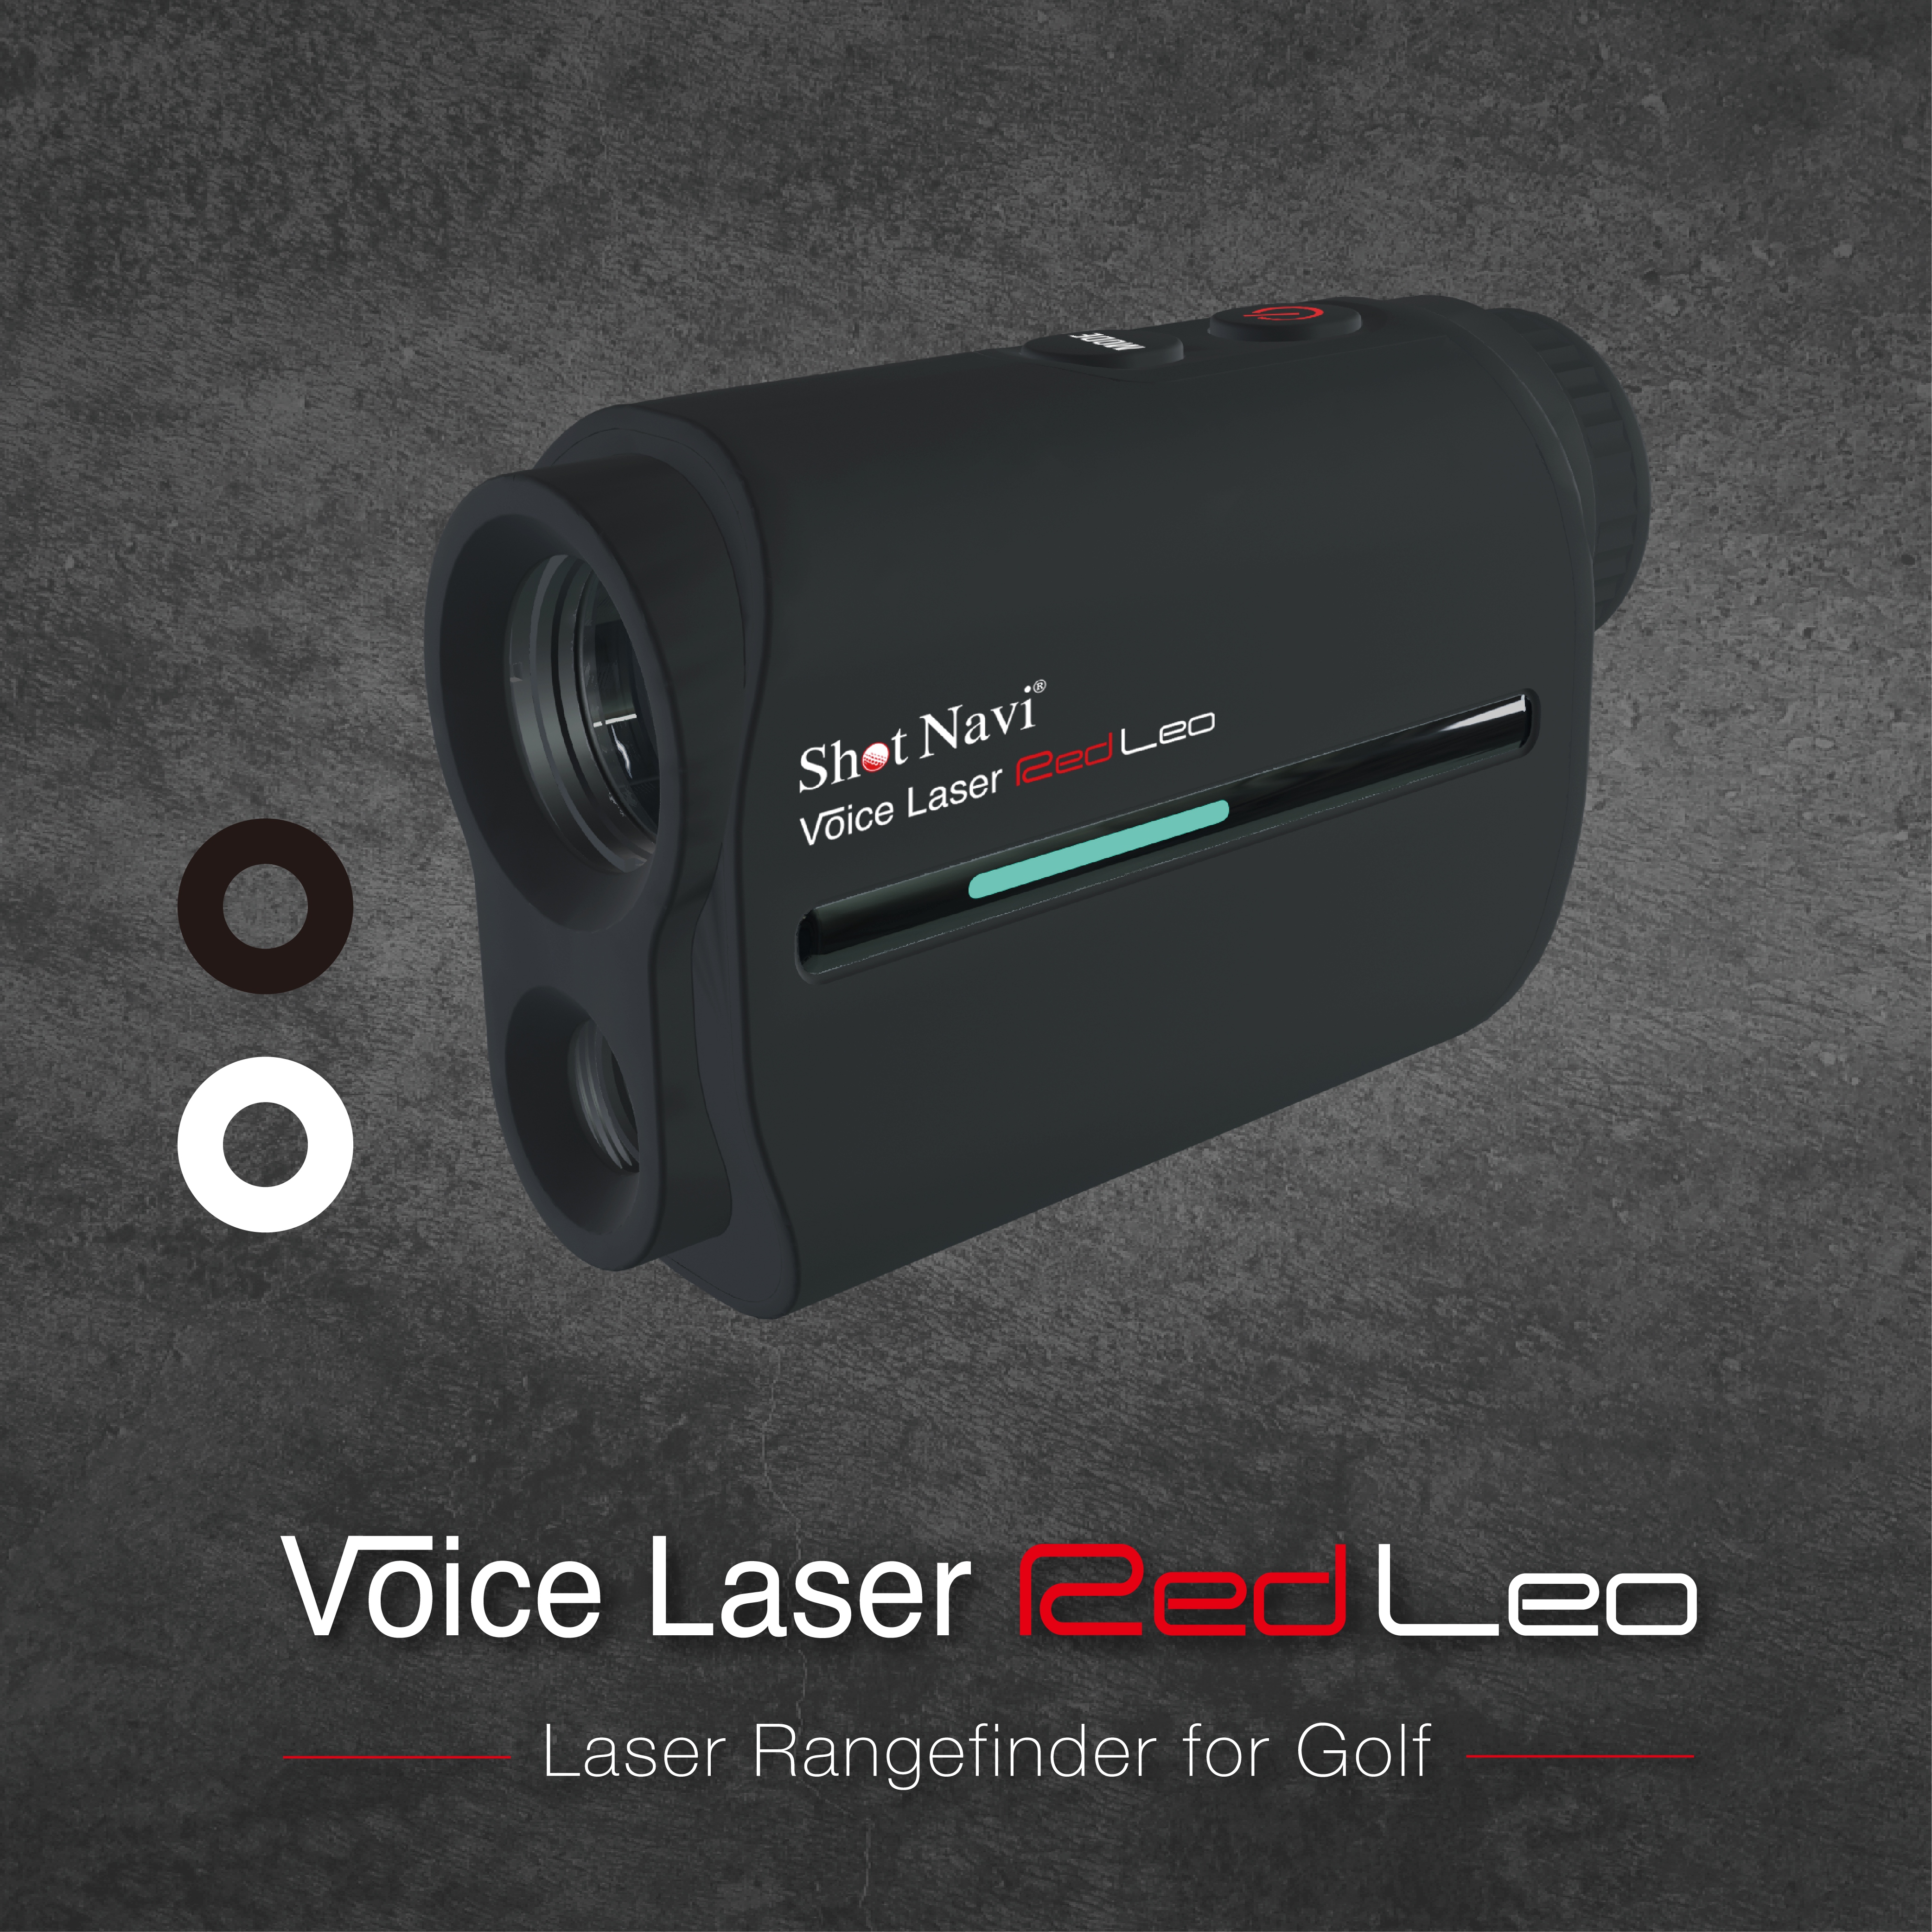 Shot Navi 白 Voice Laser Red Leo-